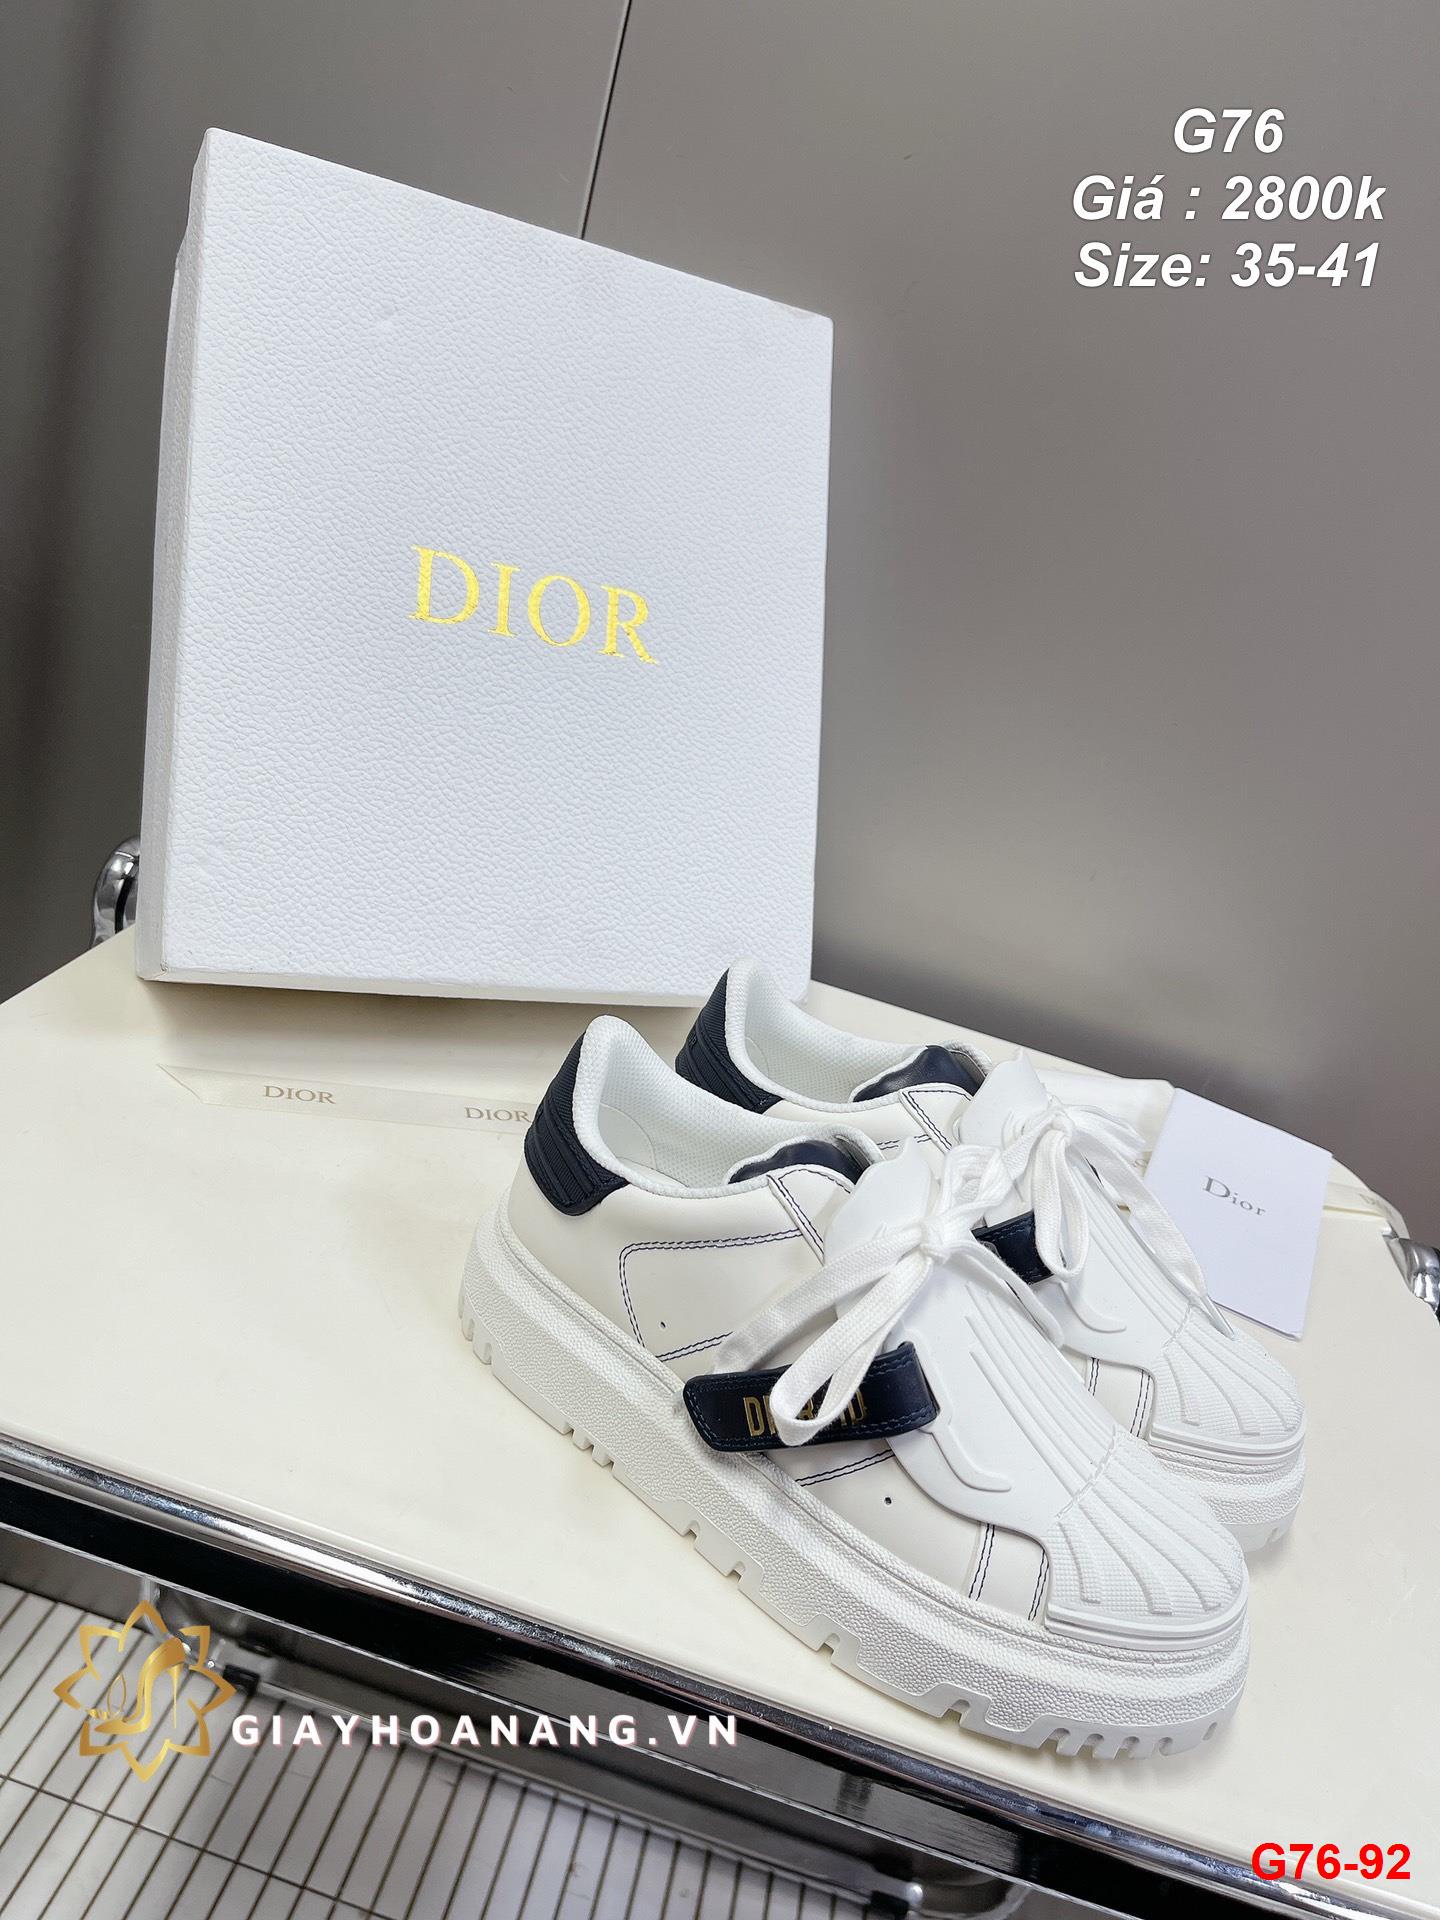 G76-92 Dior giày thể thao siêu cấp